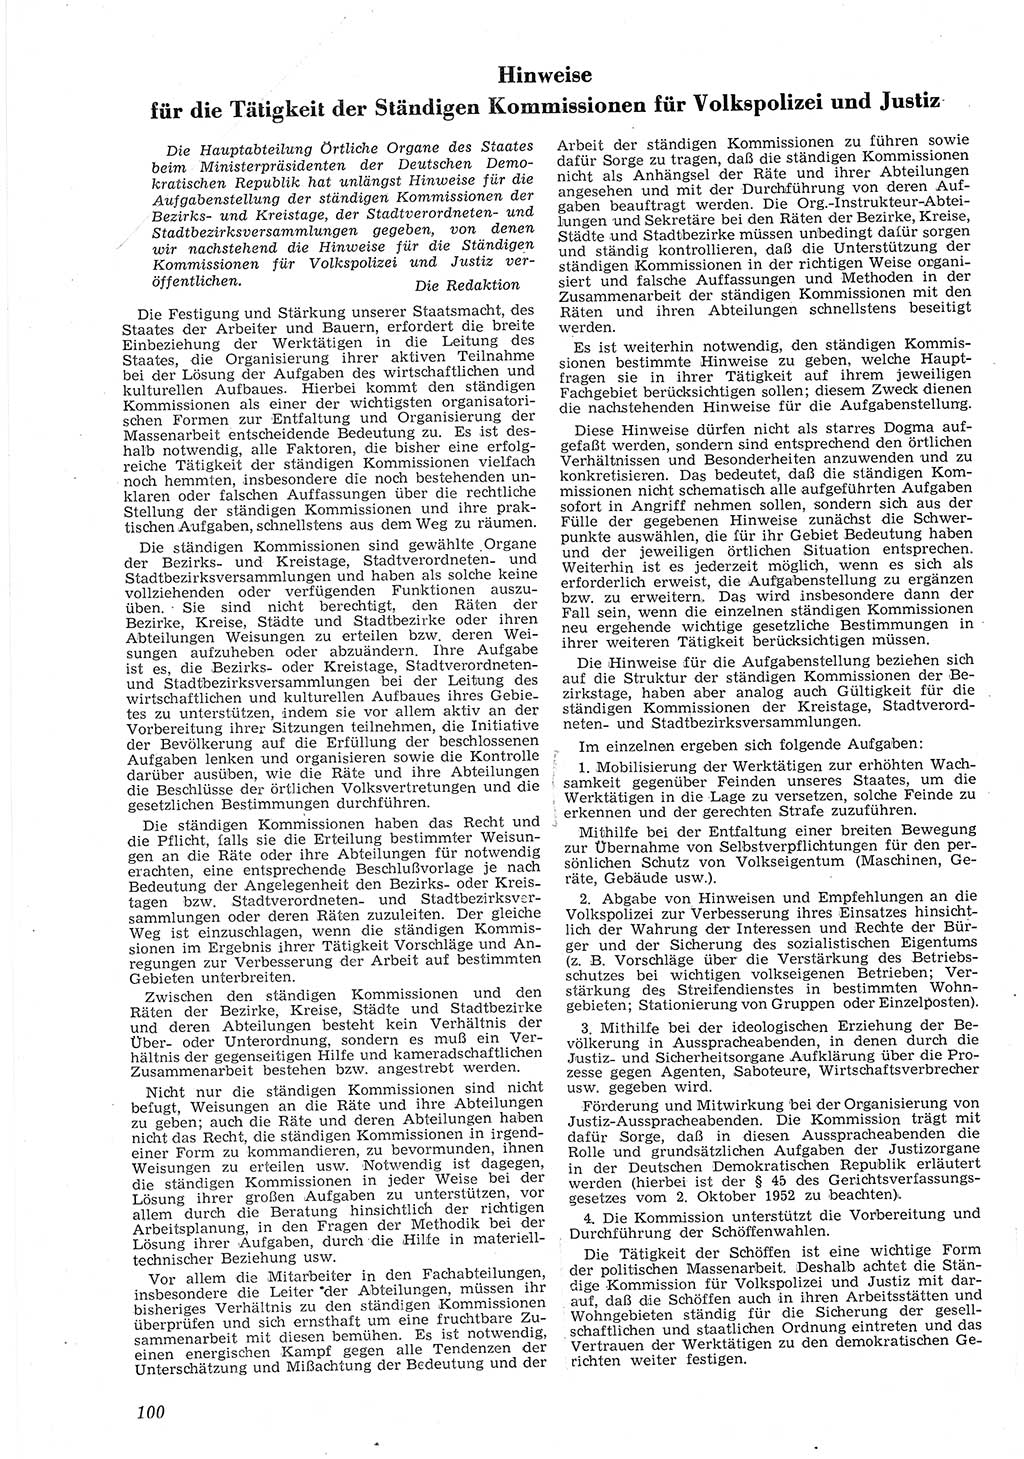 Neue Justiz (NJ), Zeitschrift für Recht und Rechtswissenschaft [Deutsche Demokratische Republik (DDR)], 8. Jahrgang 1954, Seite 100 (NJ DDR 1954, S. 100)